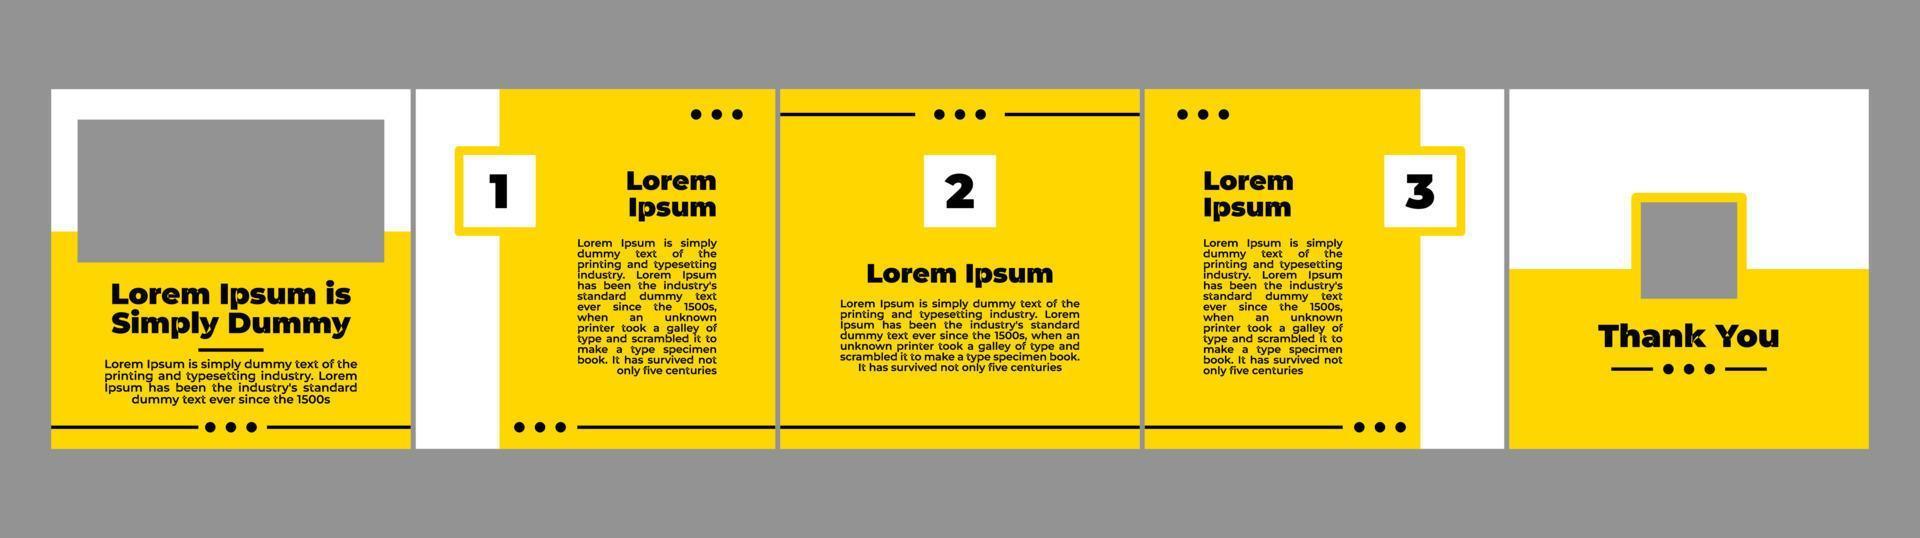 plantilla de maqueta de diseño de carrusel para publicación en redes sociales con tema de color amarillo vector